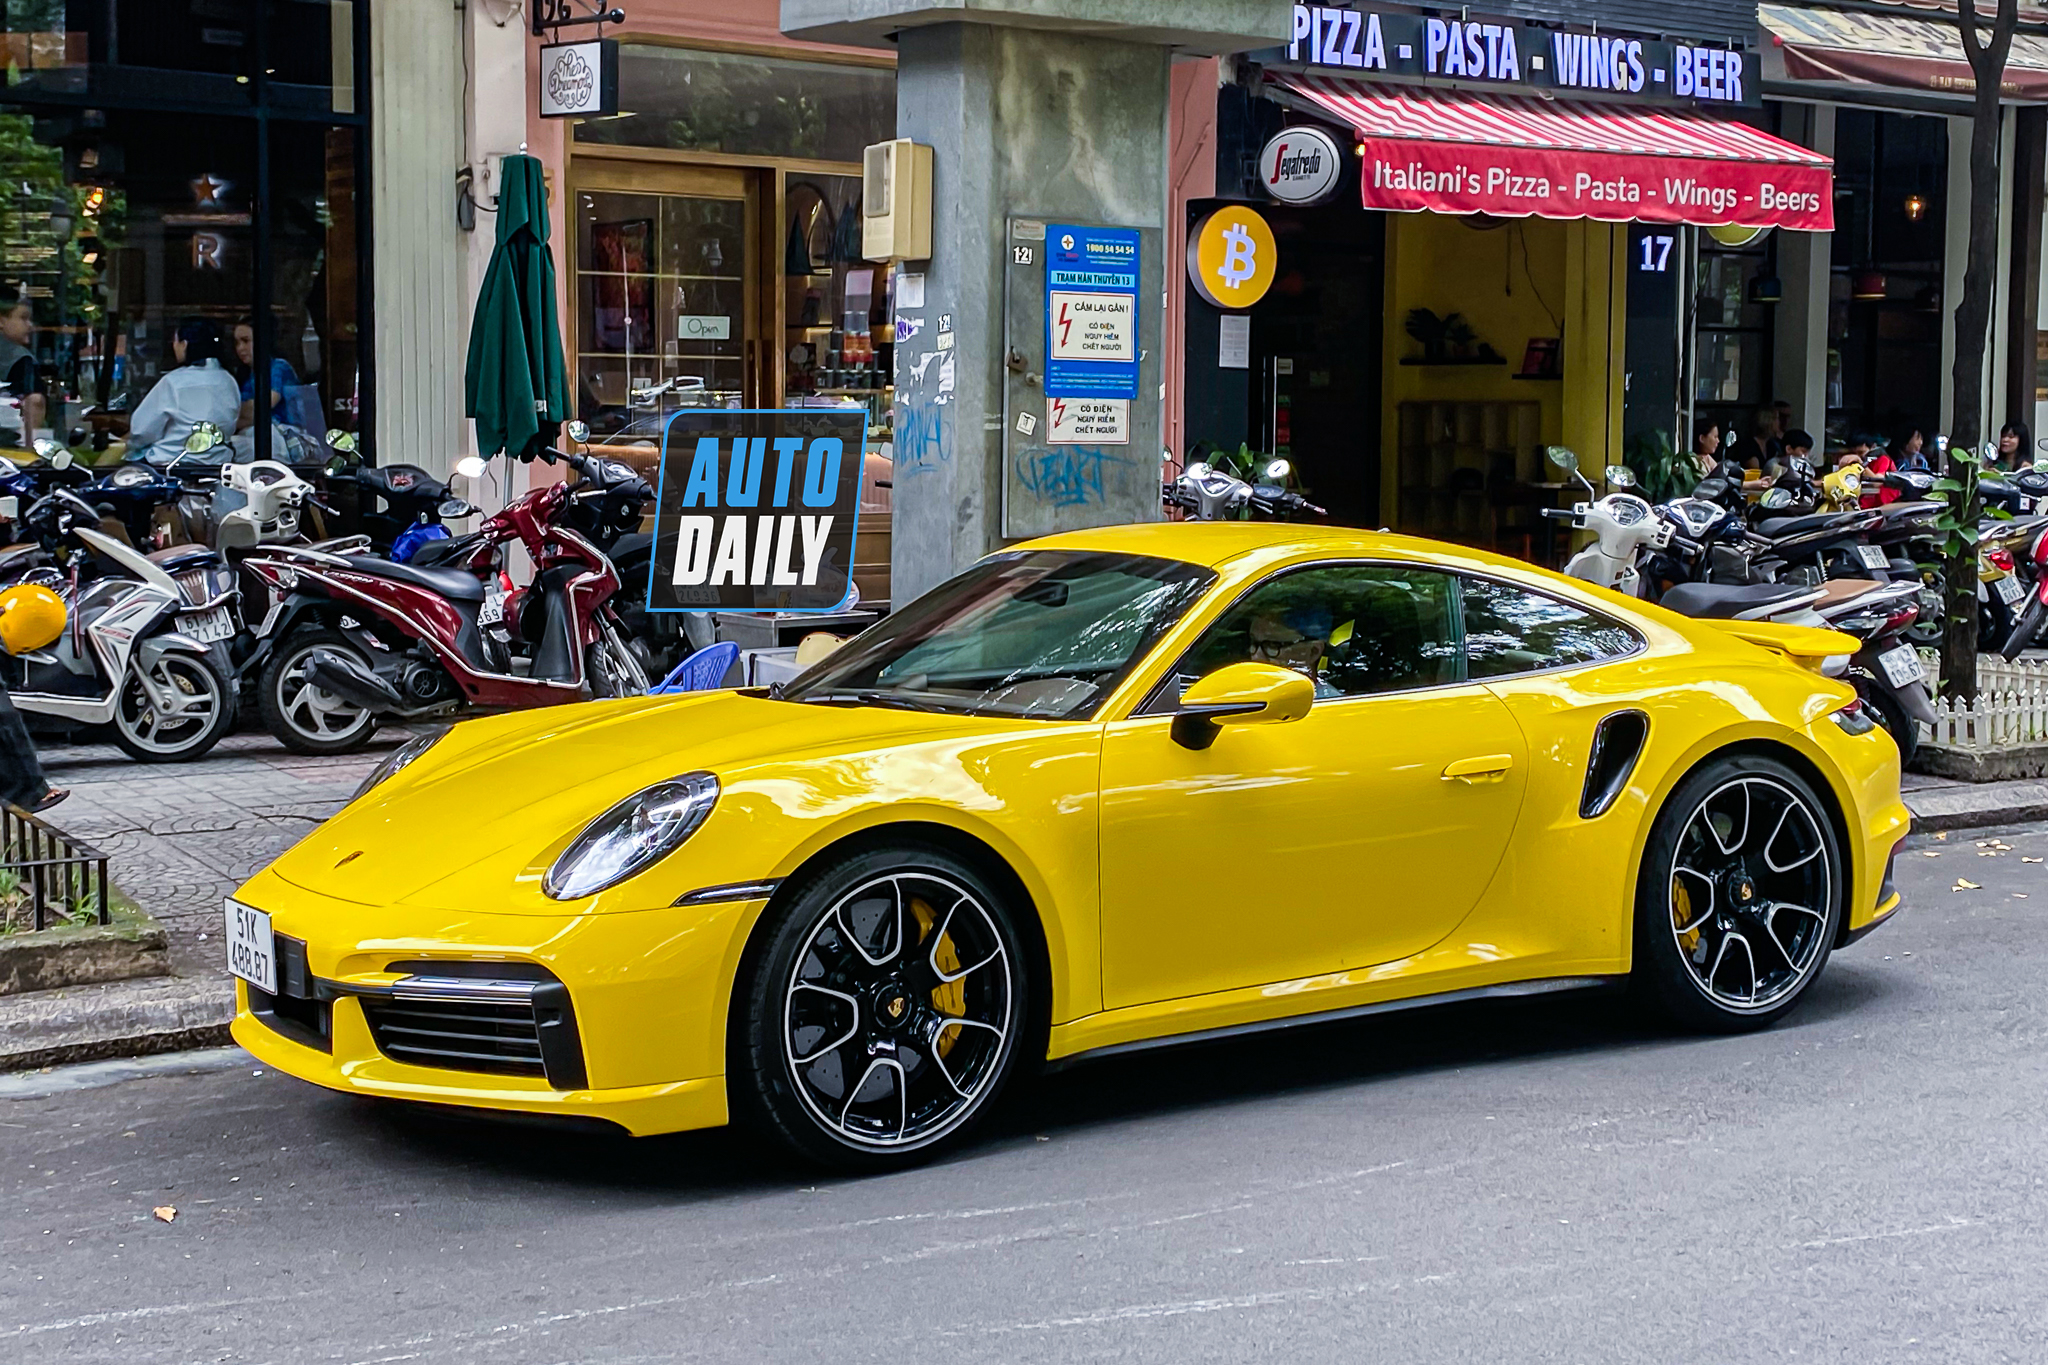 Bắt gặp Porsche 911 Turbo S hơn 17 tỷ màu vàng độc nhất Việt Nam của đại gia Sài Gòn porsche-911-turbo-s-mau-vang-autodaily-3.JPG